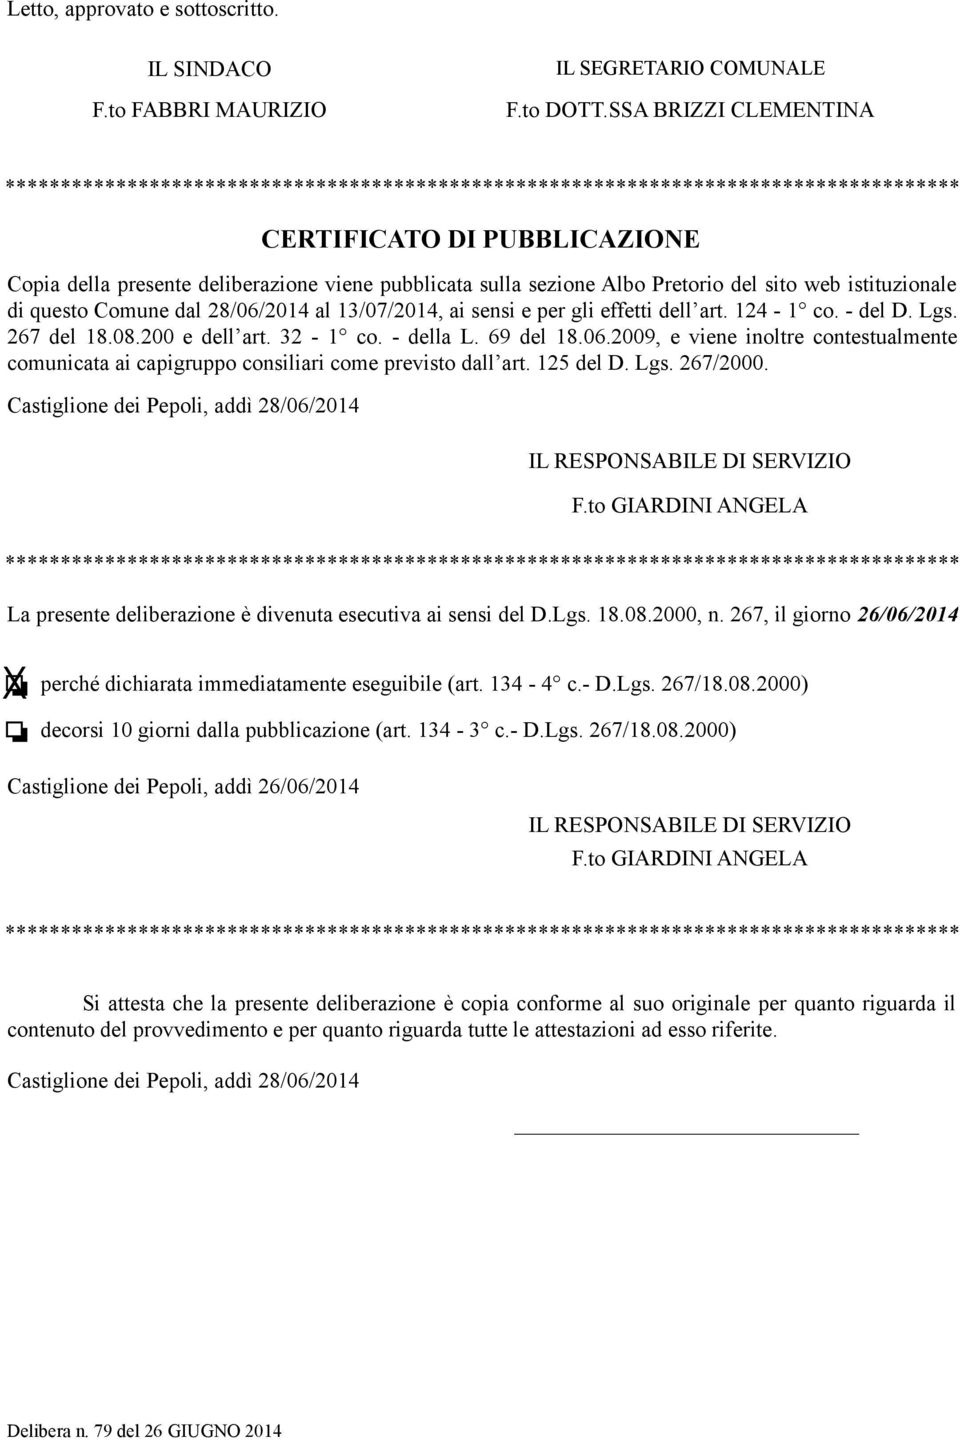 deliberazione viene pubblicata sulla sezione Albo Pretorio del sito web istituzionale di questo Comune dal 28/06/2014 al 13/07/2014, ai sensi e per gli effetti dell art. 124-1 co. - del D. Lgs.